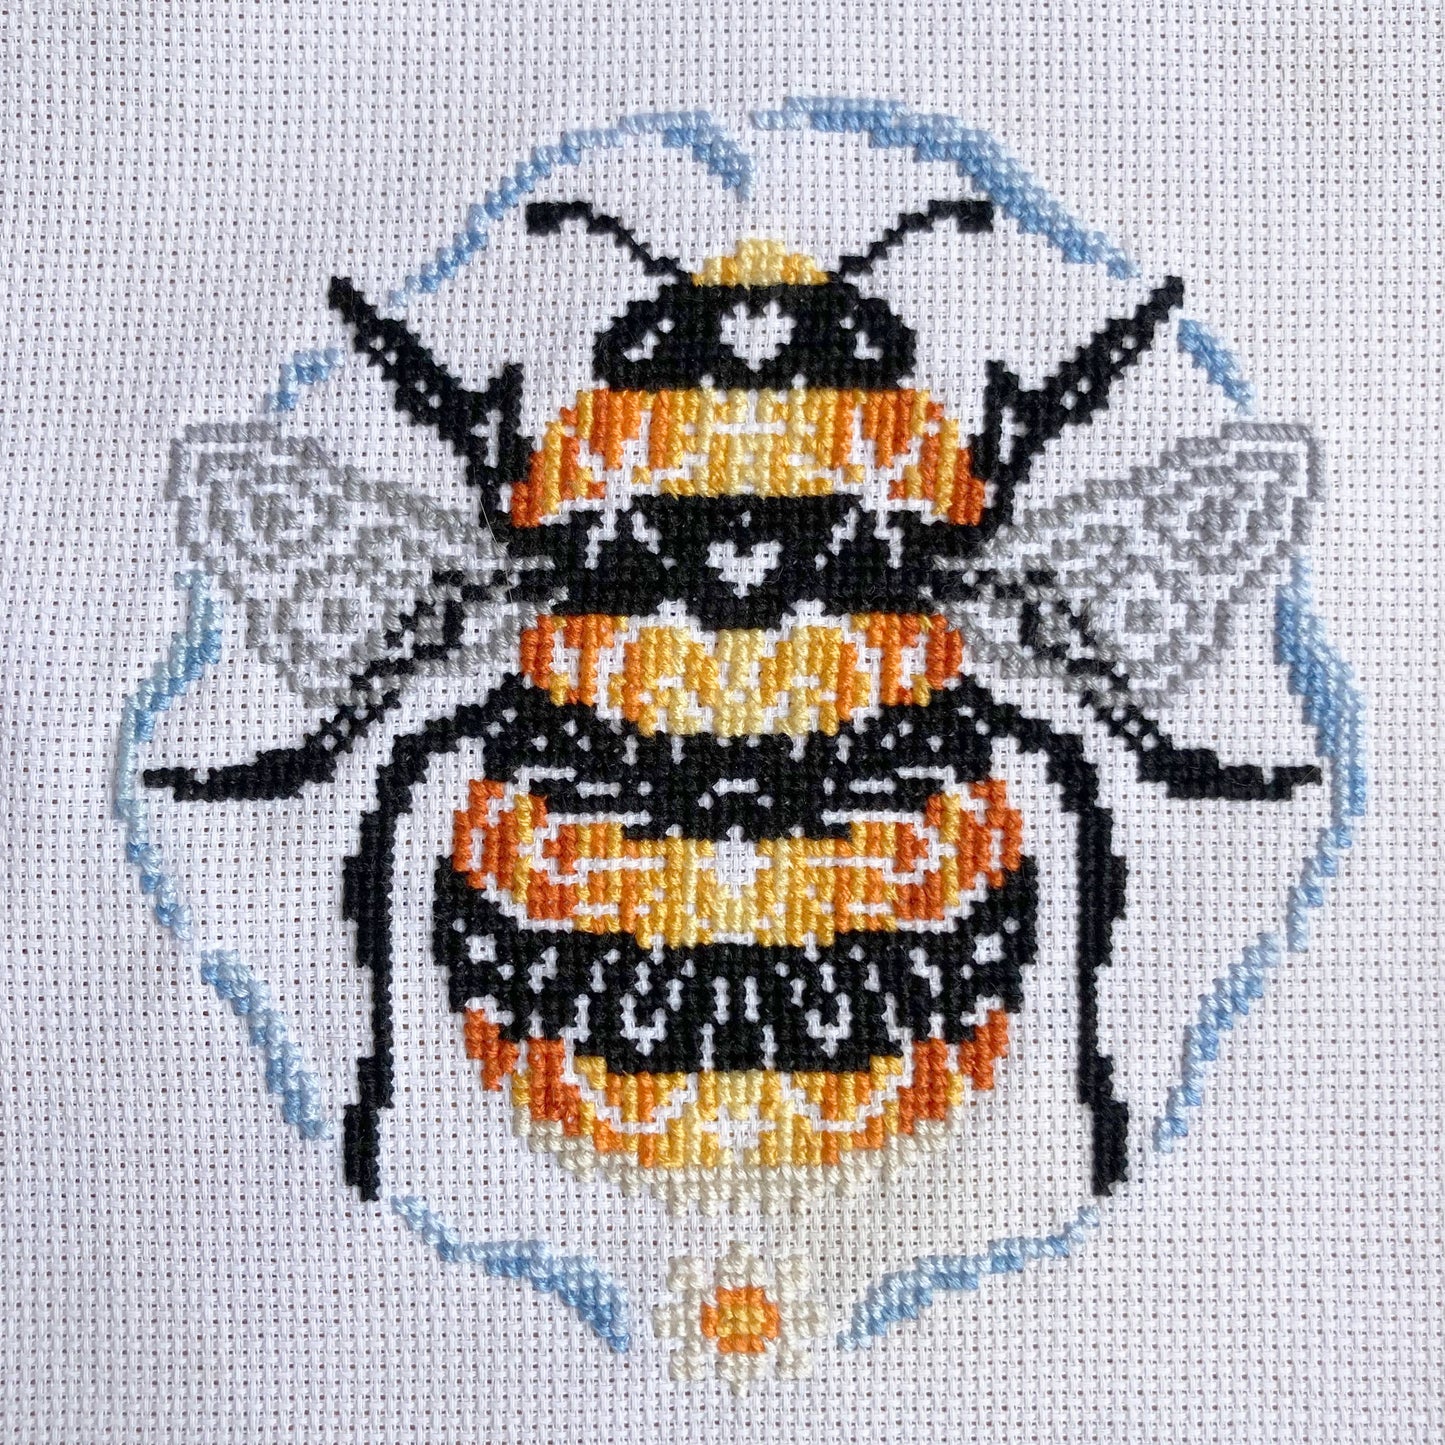 Bee Kind Cross Stitch Kit